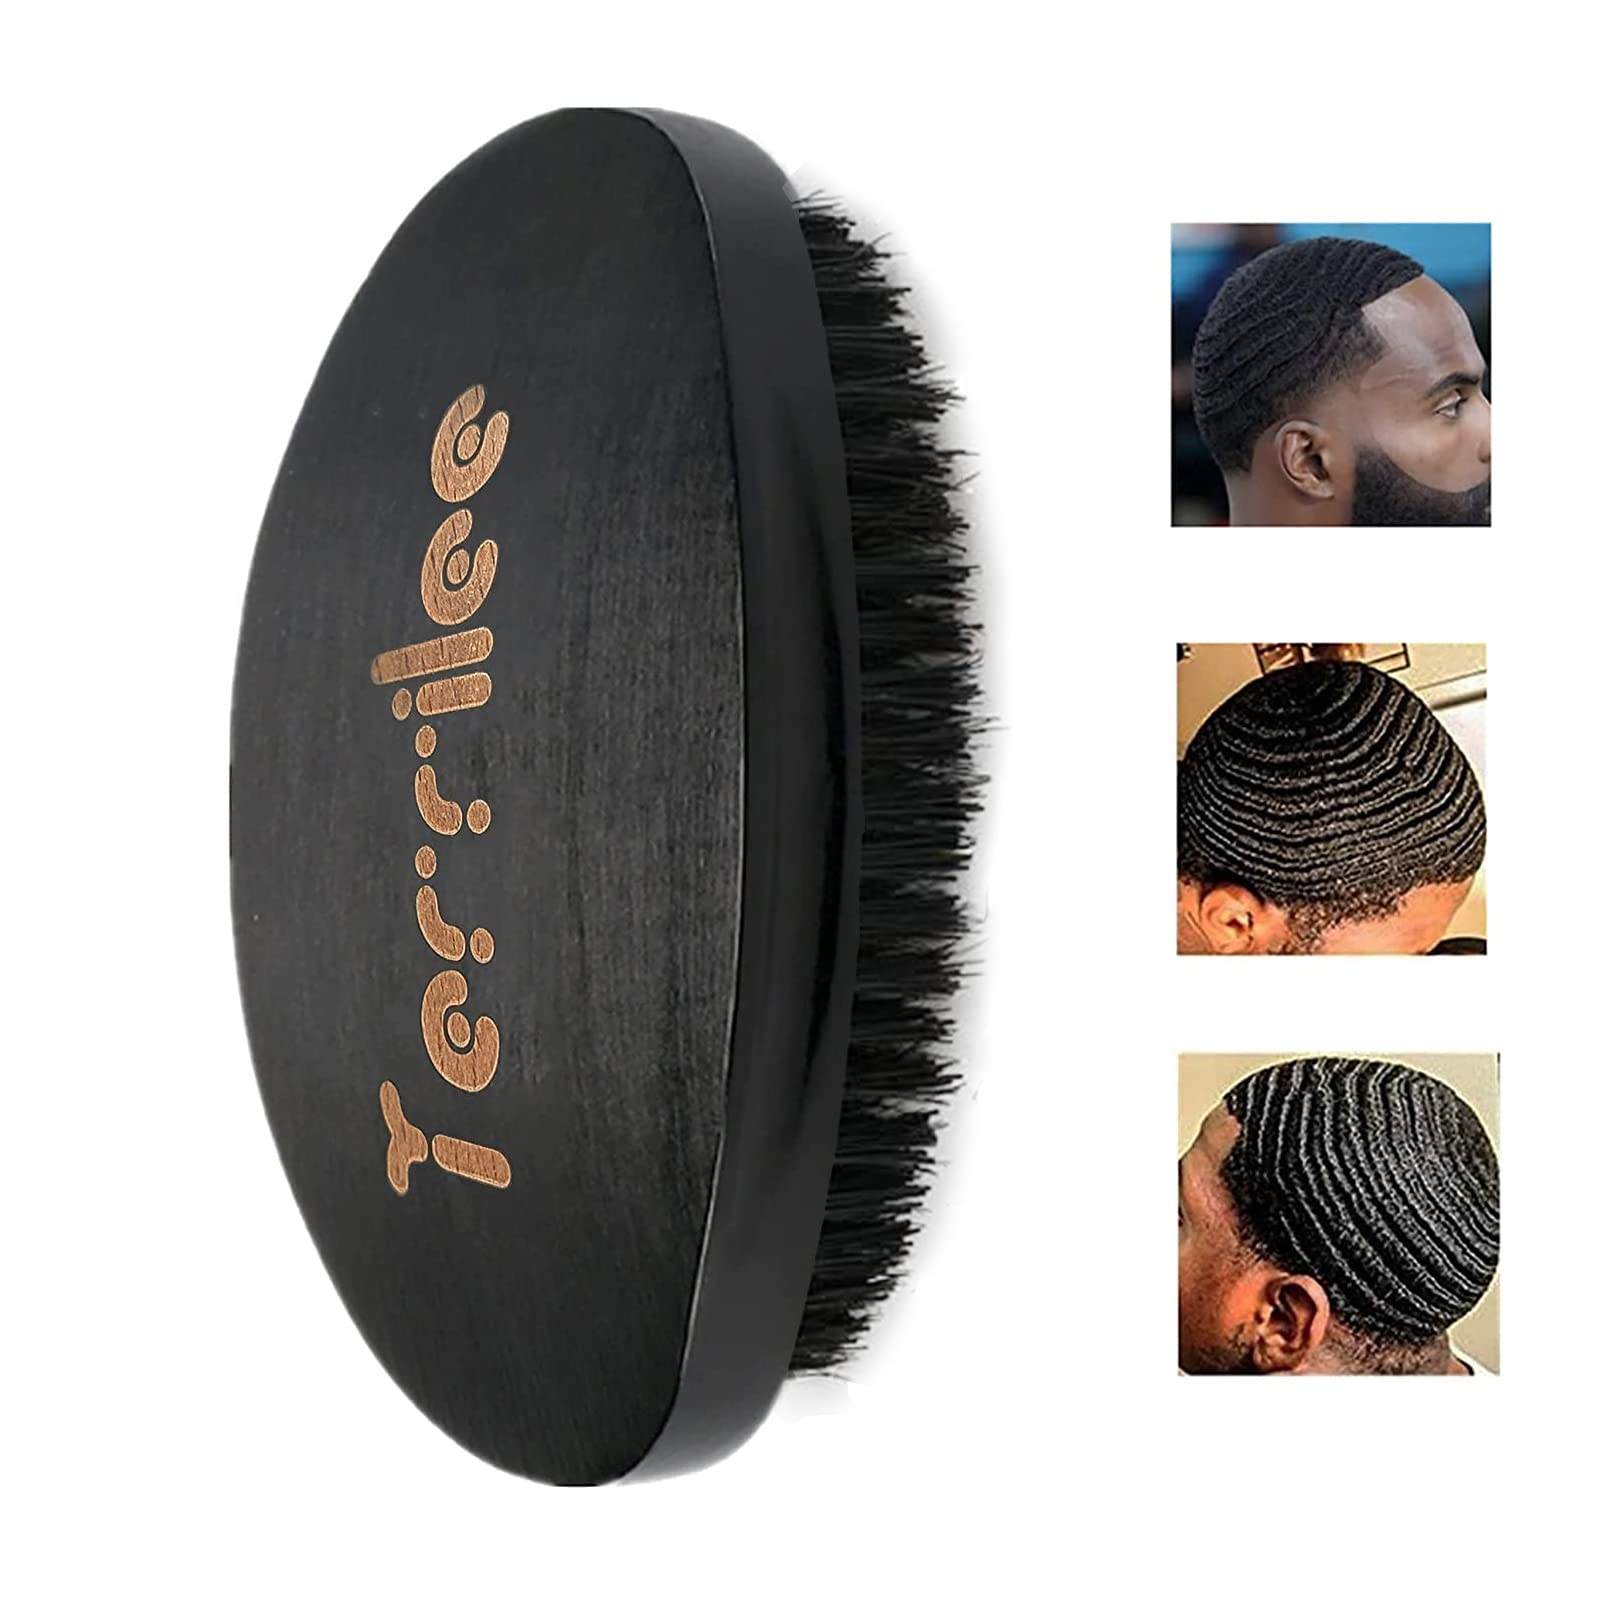 black men hairstyles waves